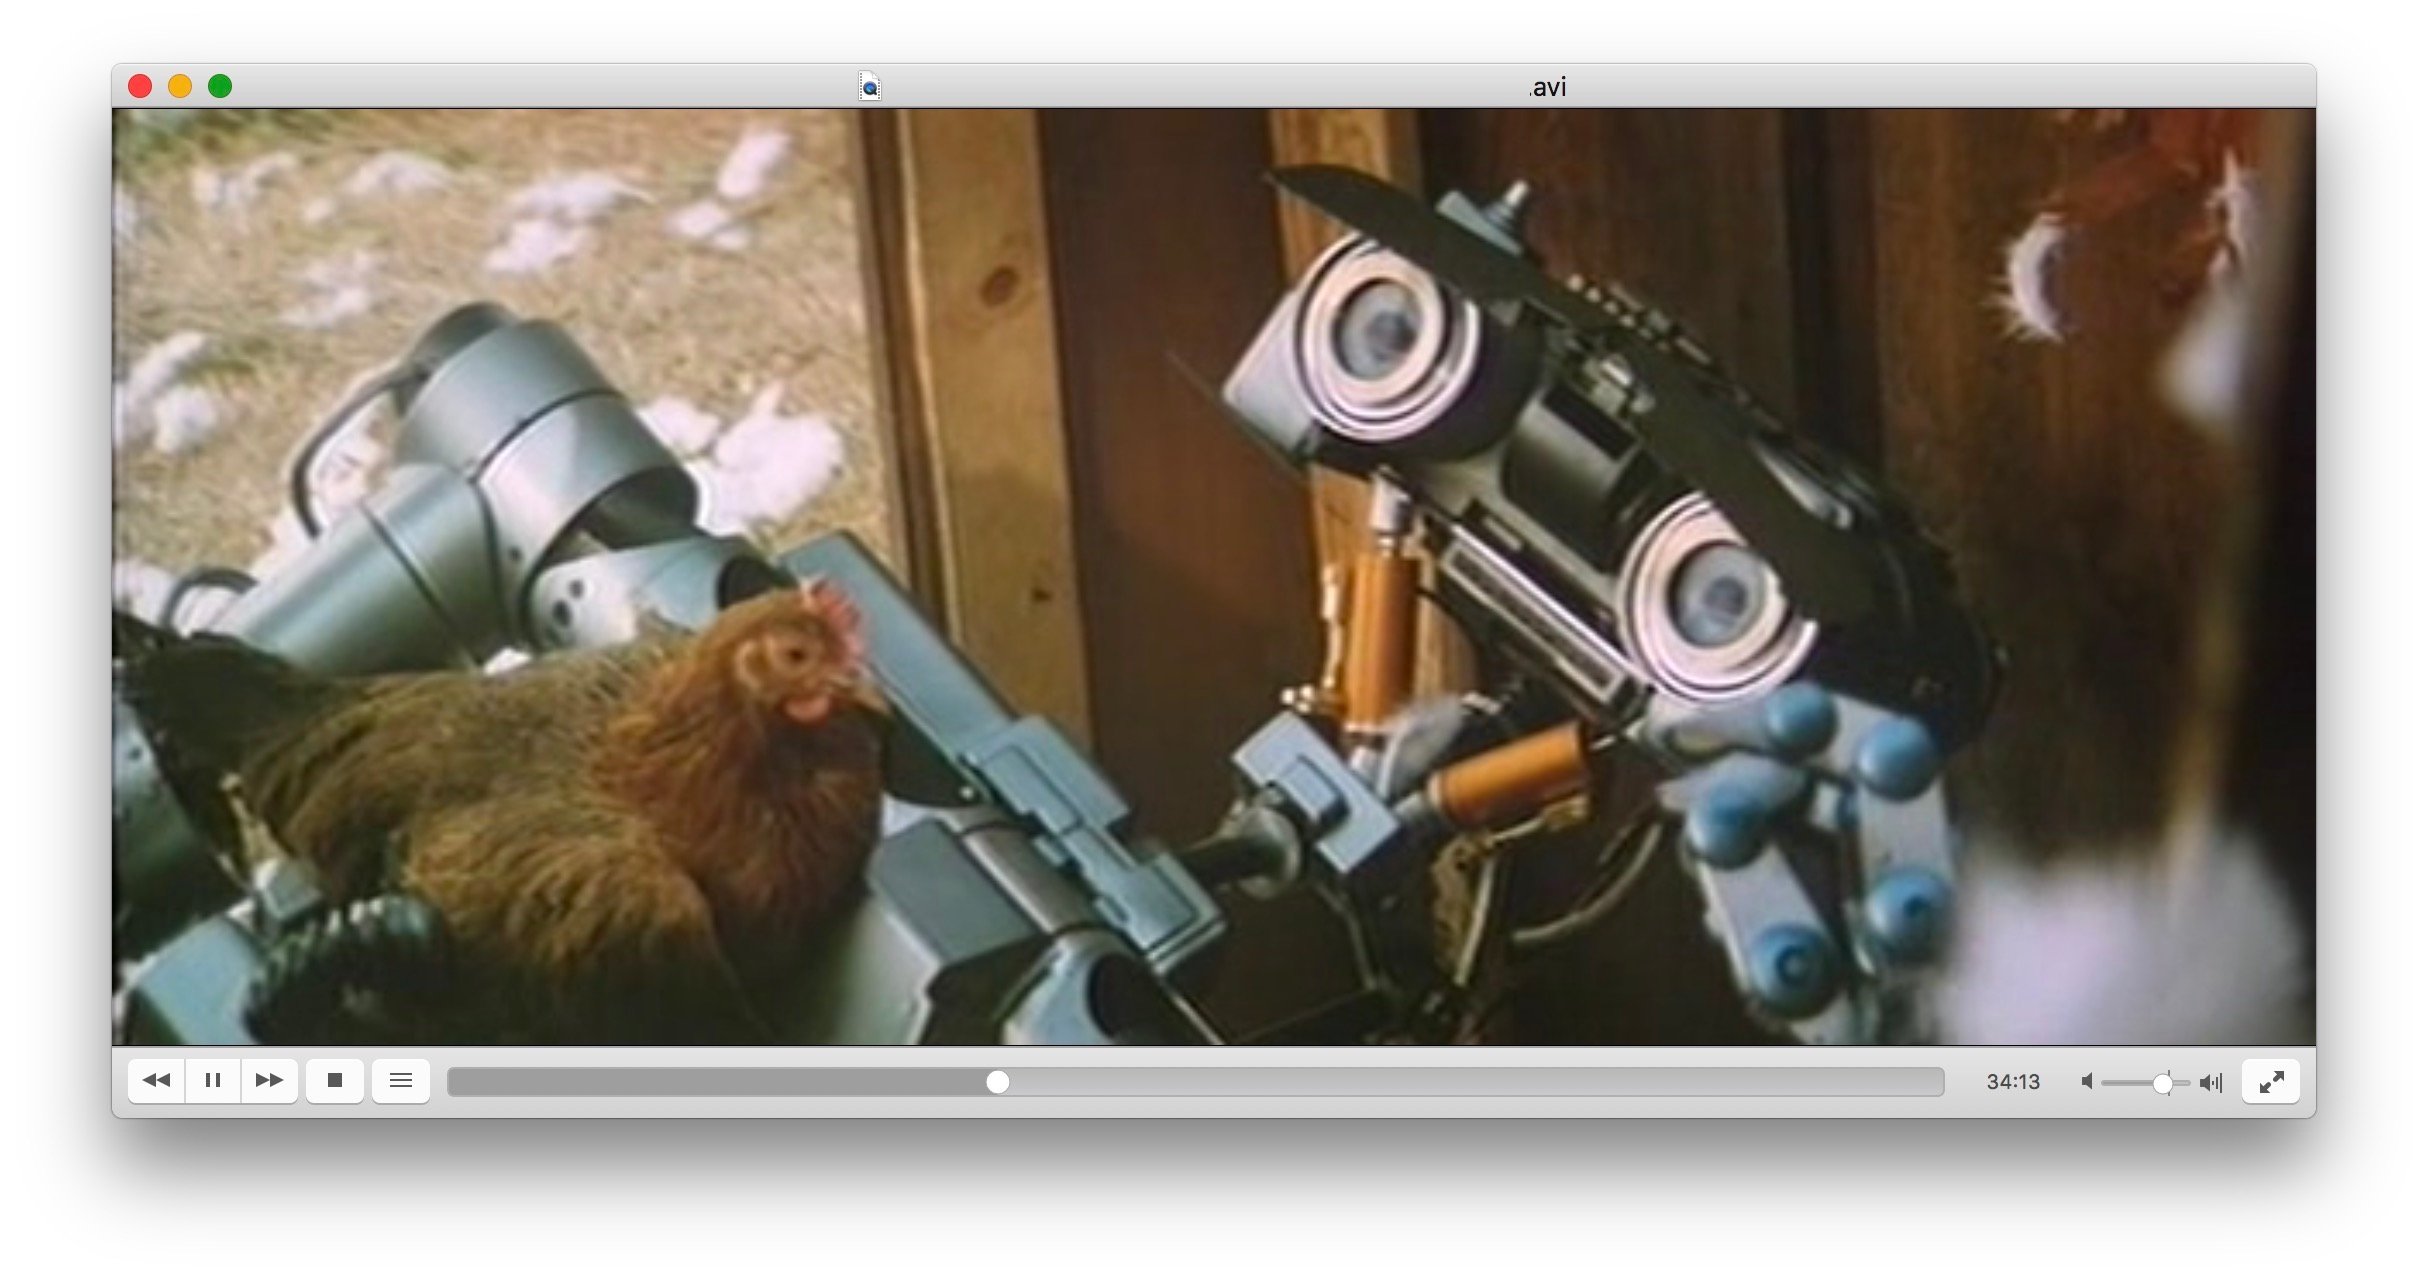 Capture d'écran de l'interface utilisateur de VLC 3.0 montrant une vidéo en cours de lecture